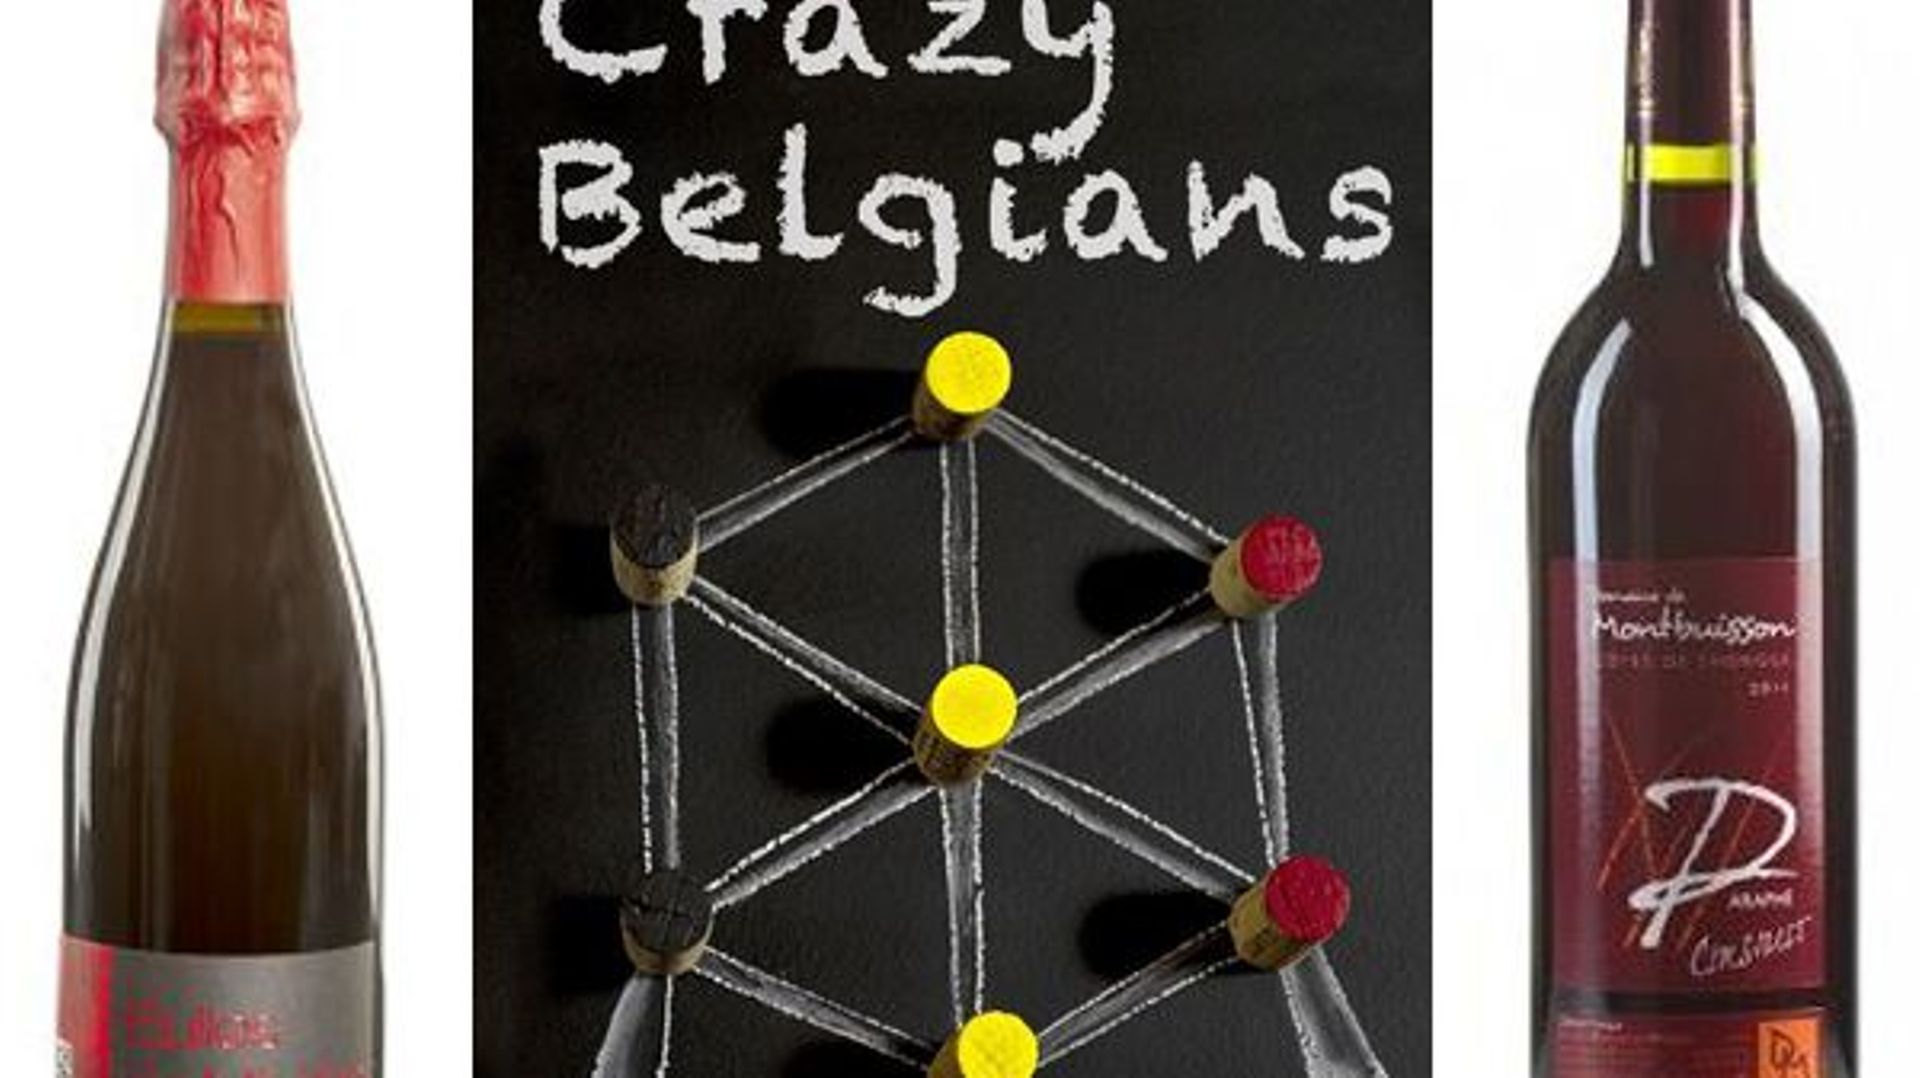 crazy-belgians-la-folie-de-passionnes-de-vins-livree-a-votre-curiosite